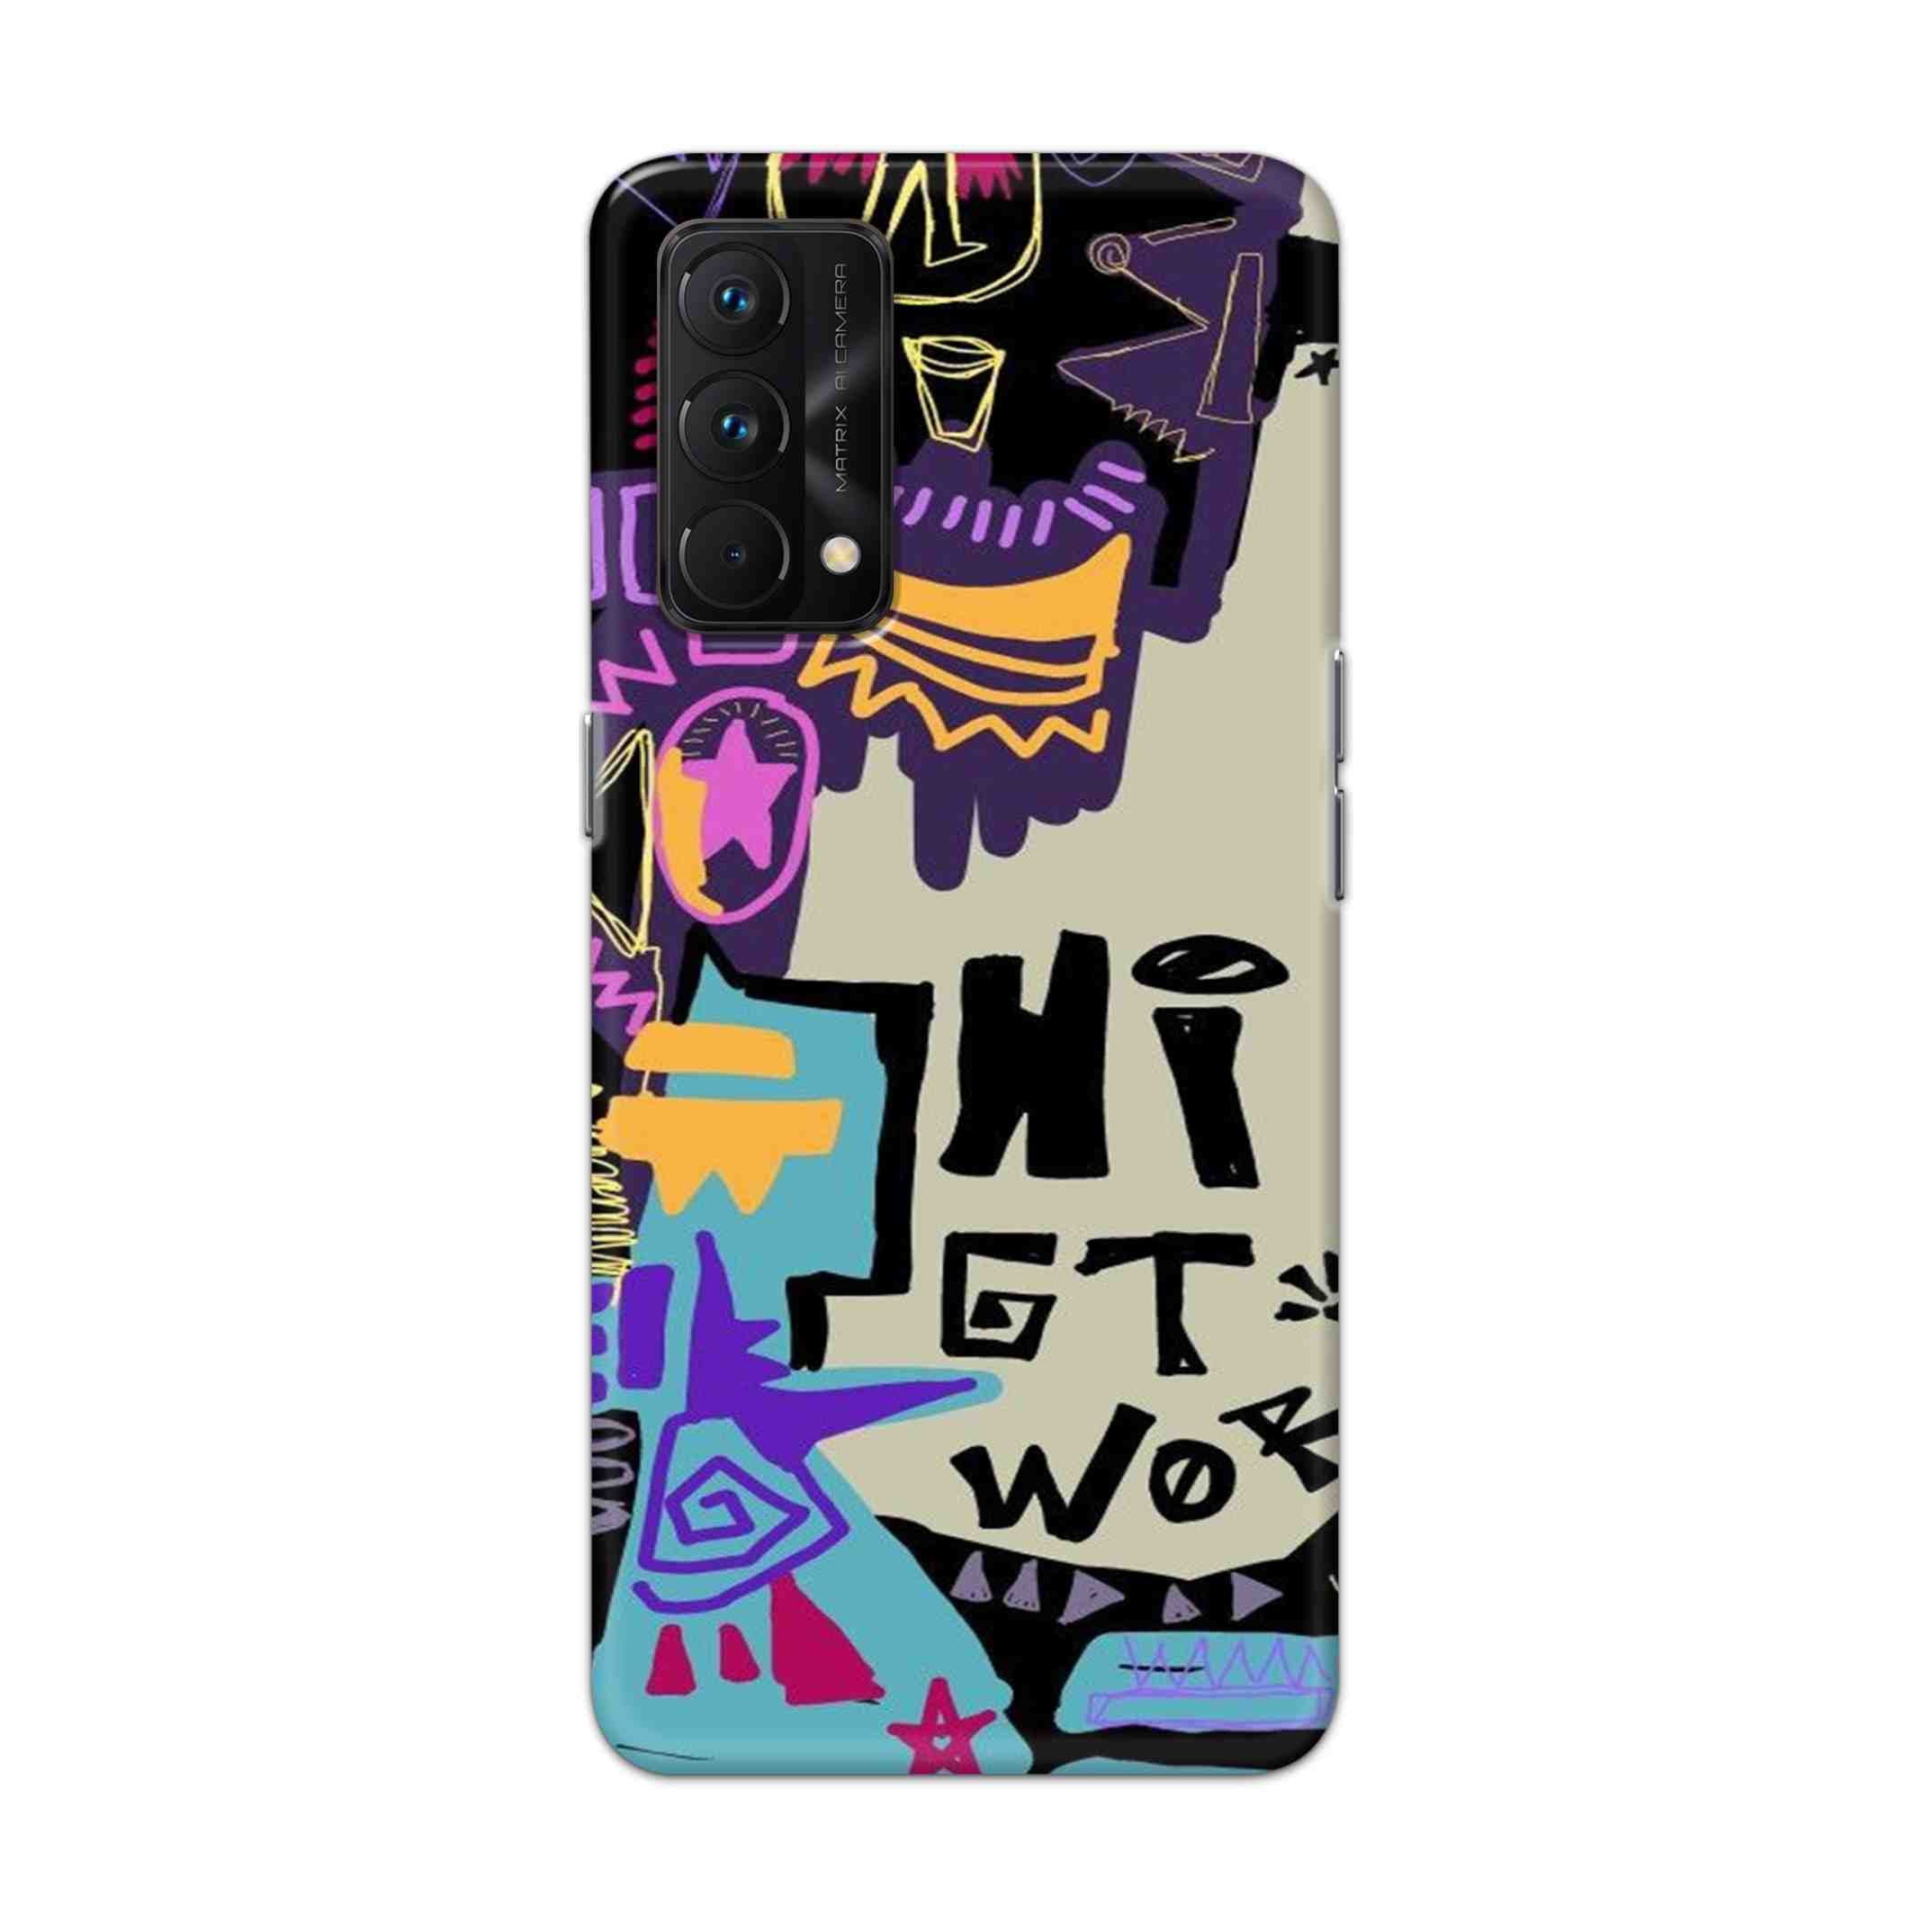 Buy Hi Gt World Hard Back Mobile Phone Case Cover For Realme GT Master Online